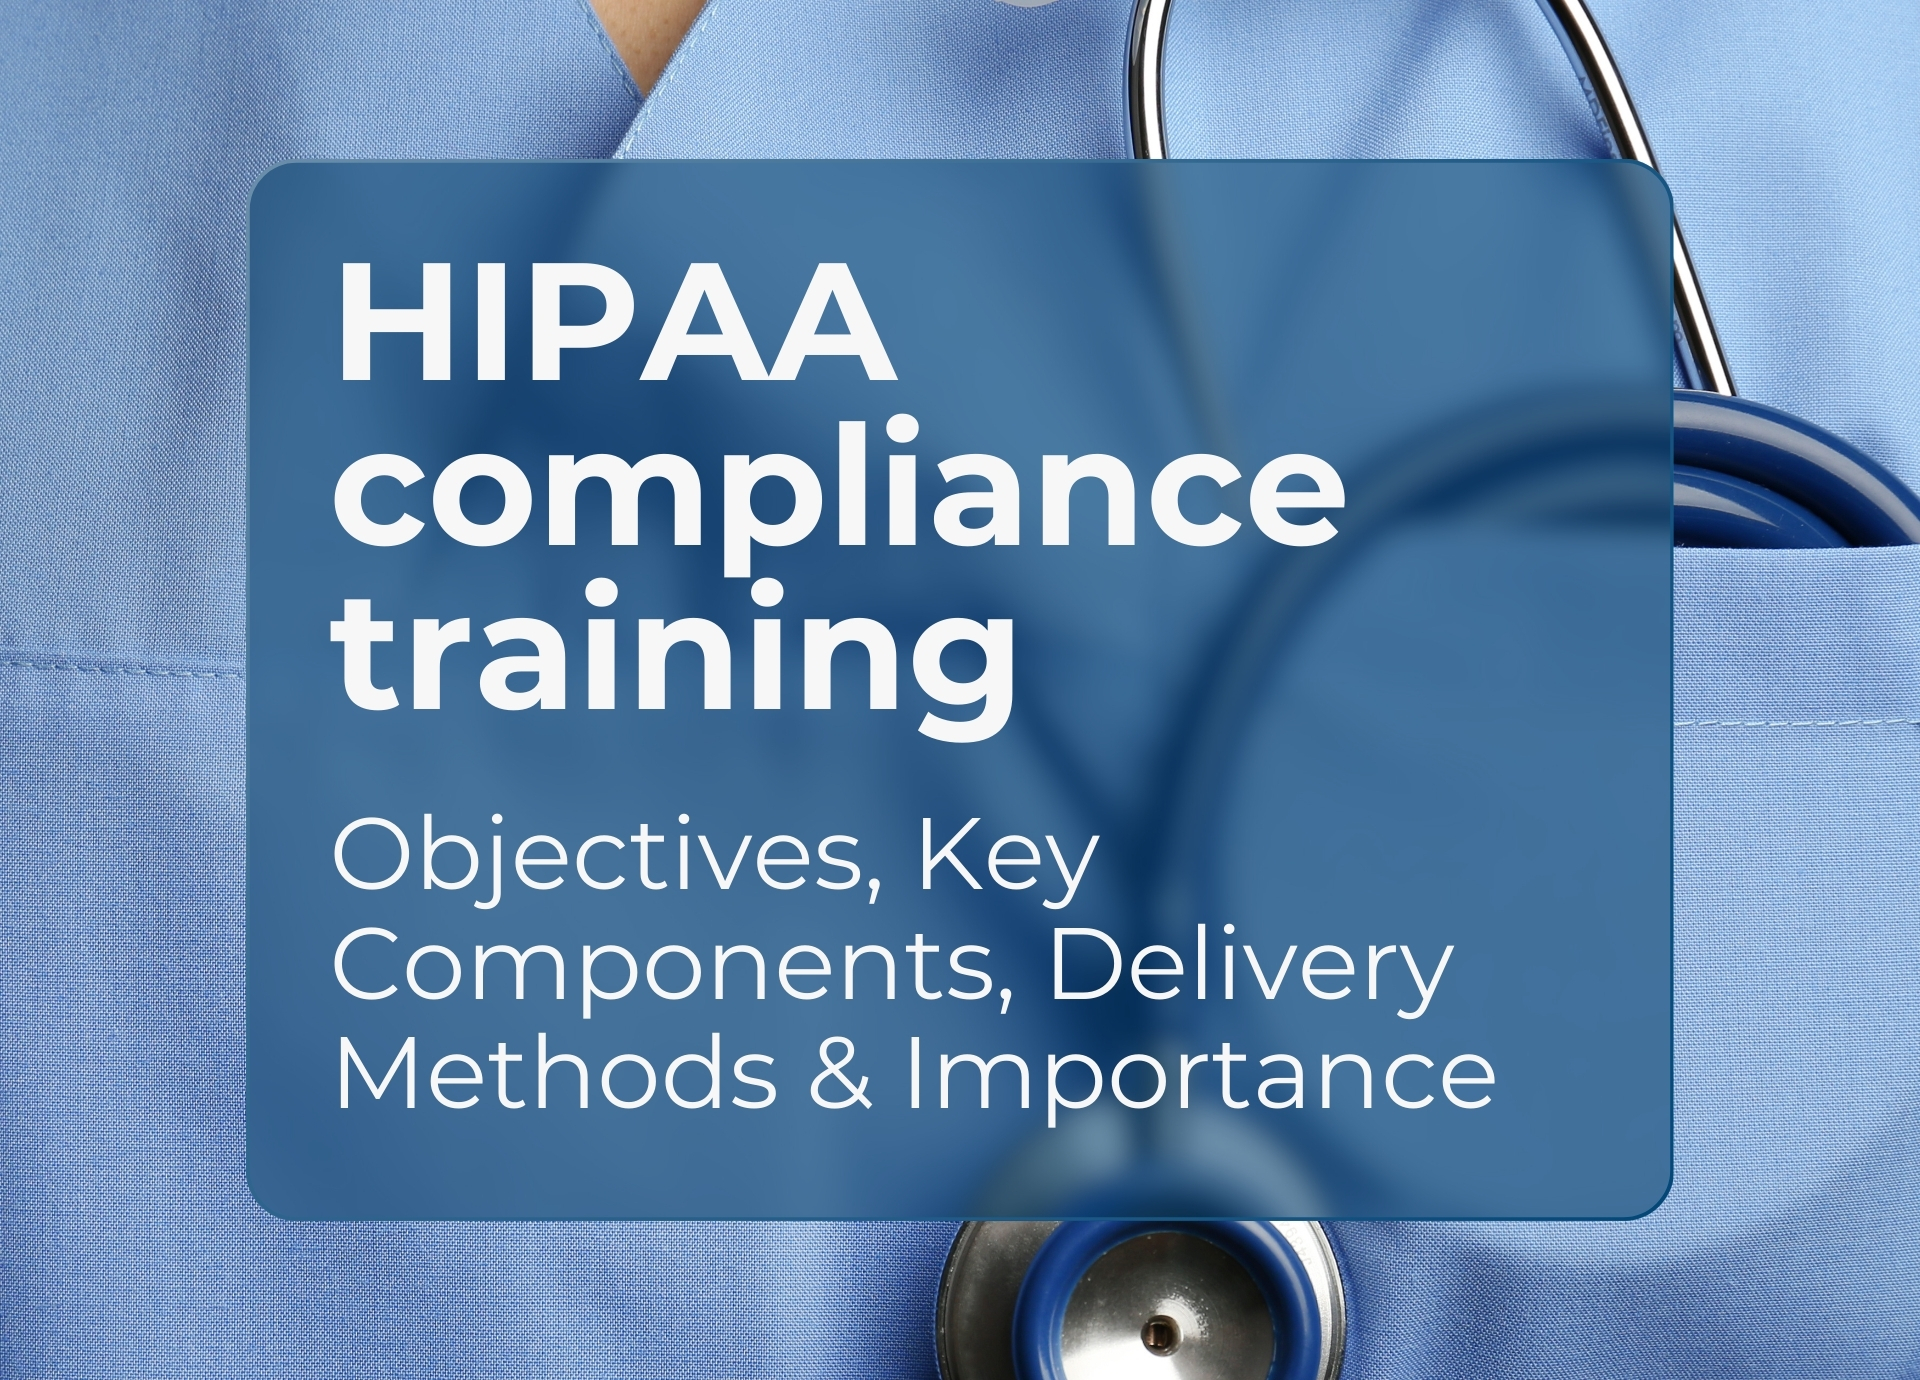 HIPAA compliance training